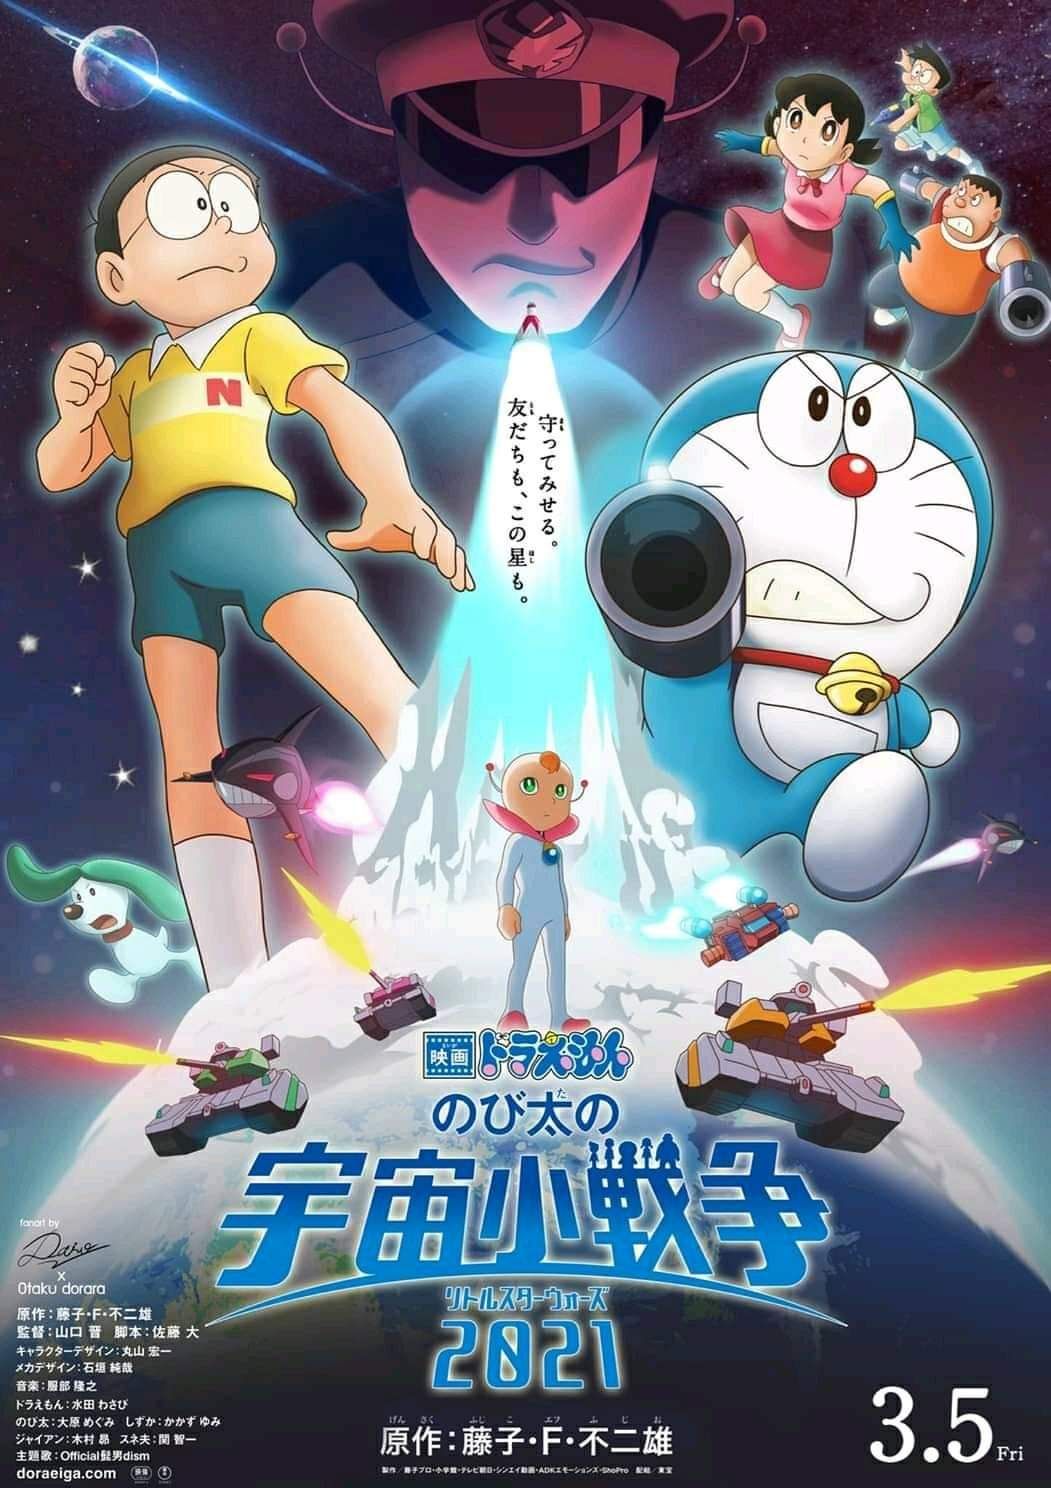 Jujutsu Kaisen 0 Nhường Lại Vị Trí Top 1 Phòng Vé Cho Movie Doraemon Mới